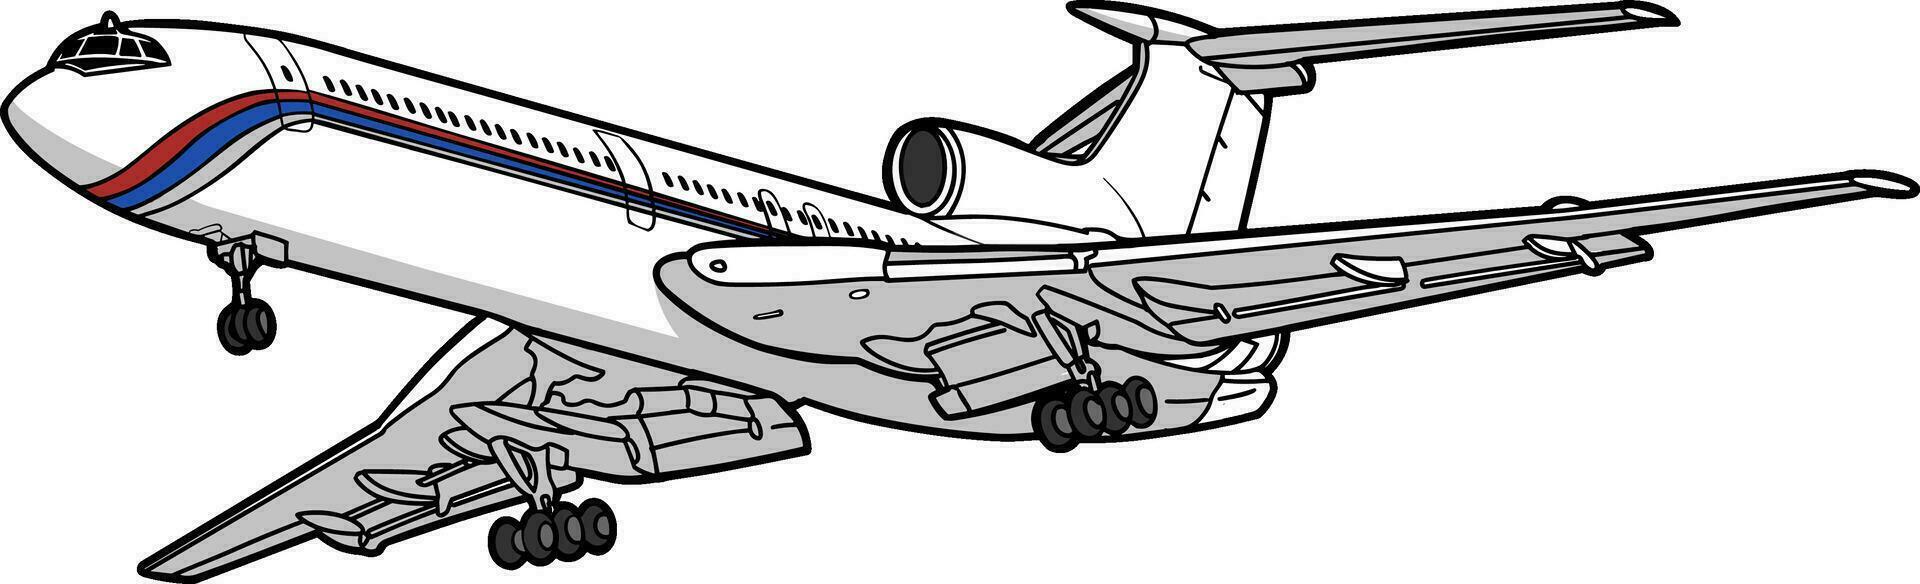 flygplan flygande himmel transport illustration vektor